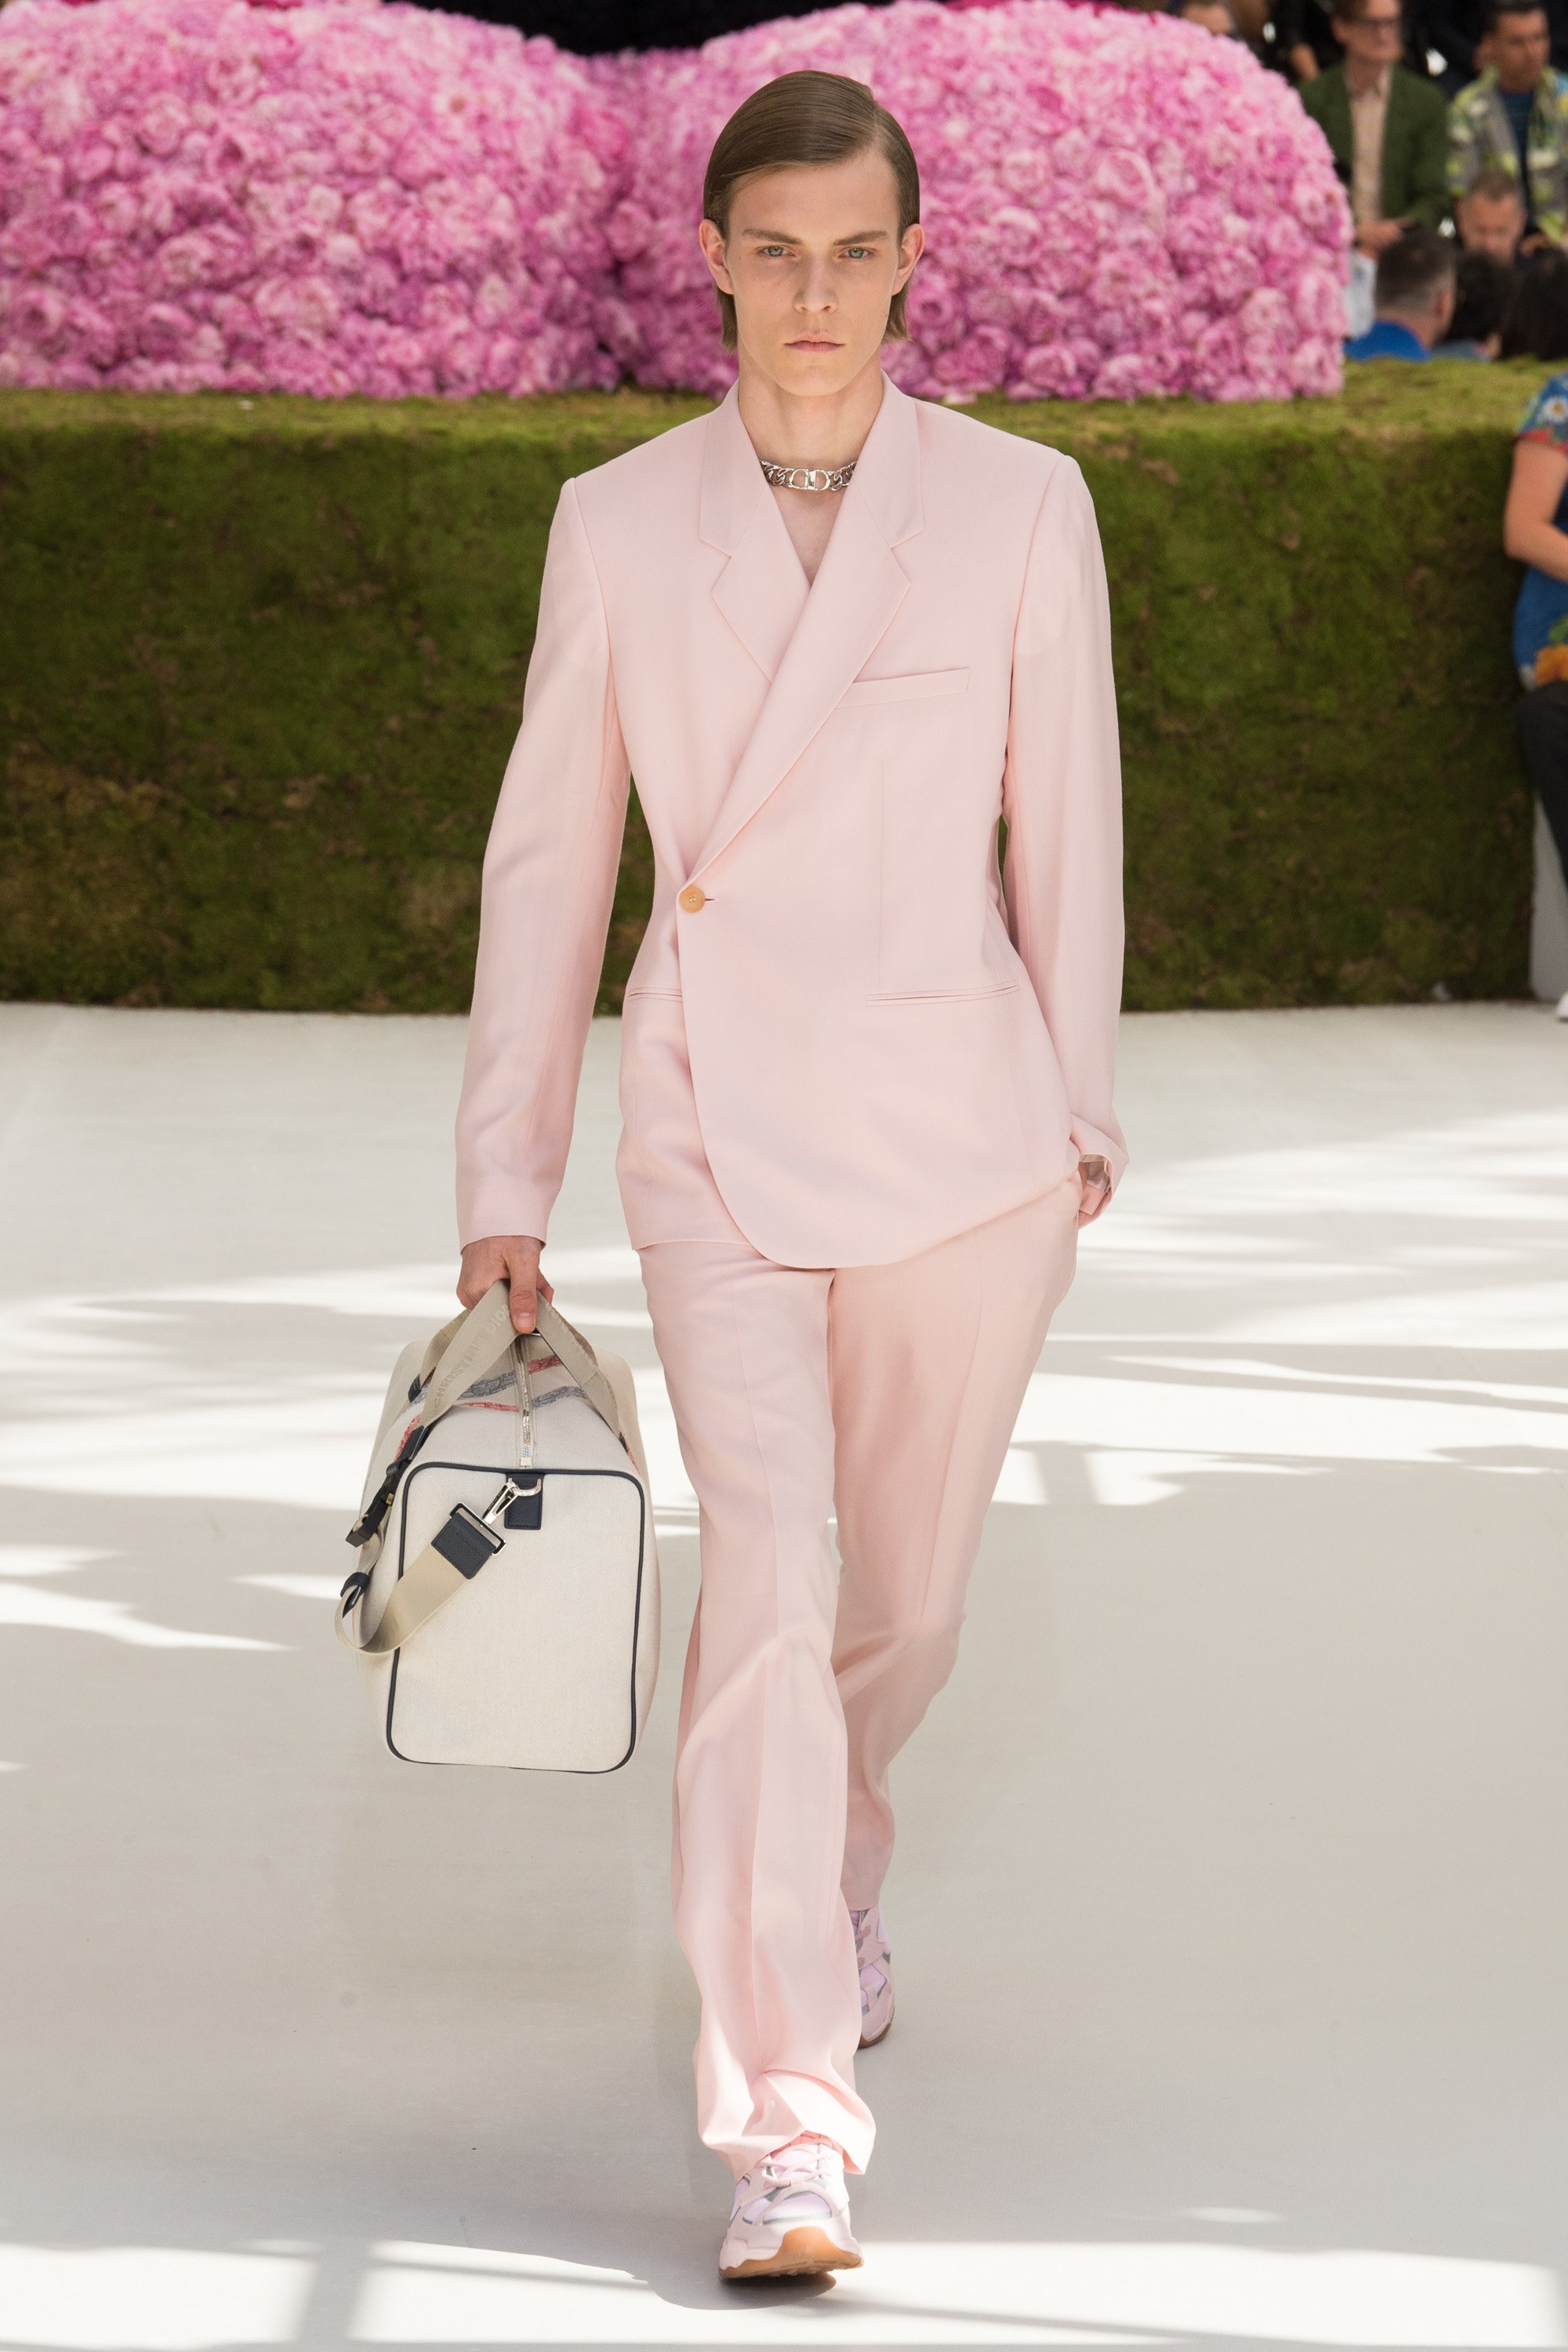 Dior Homme Kim Jones KAWS 2019 Mens Suit. 52/42. $4000